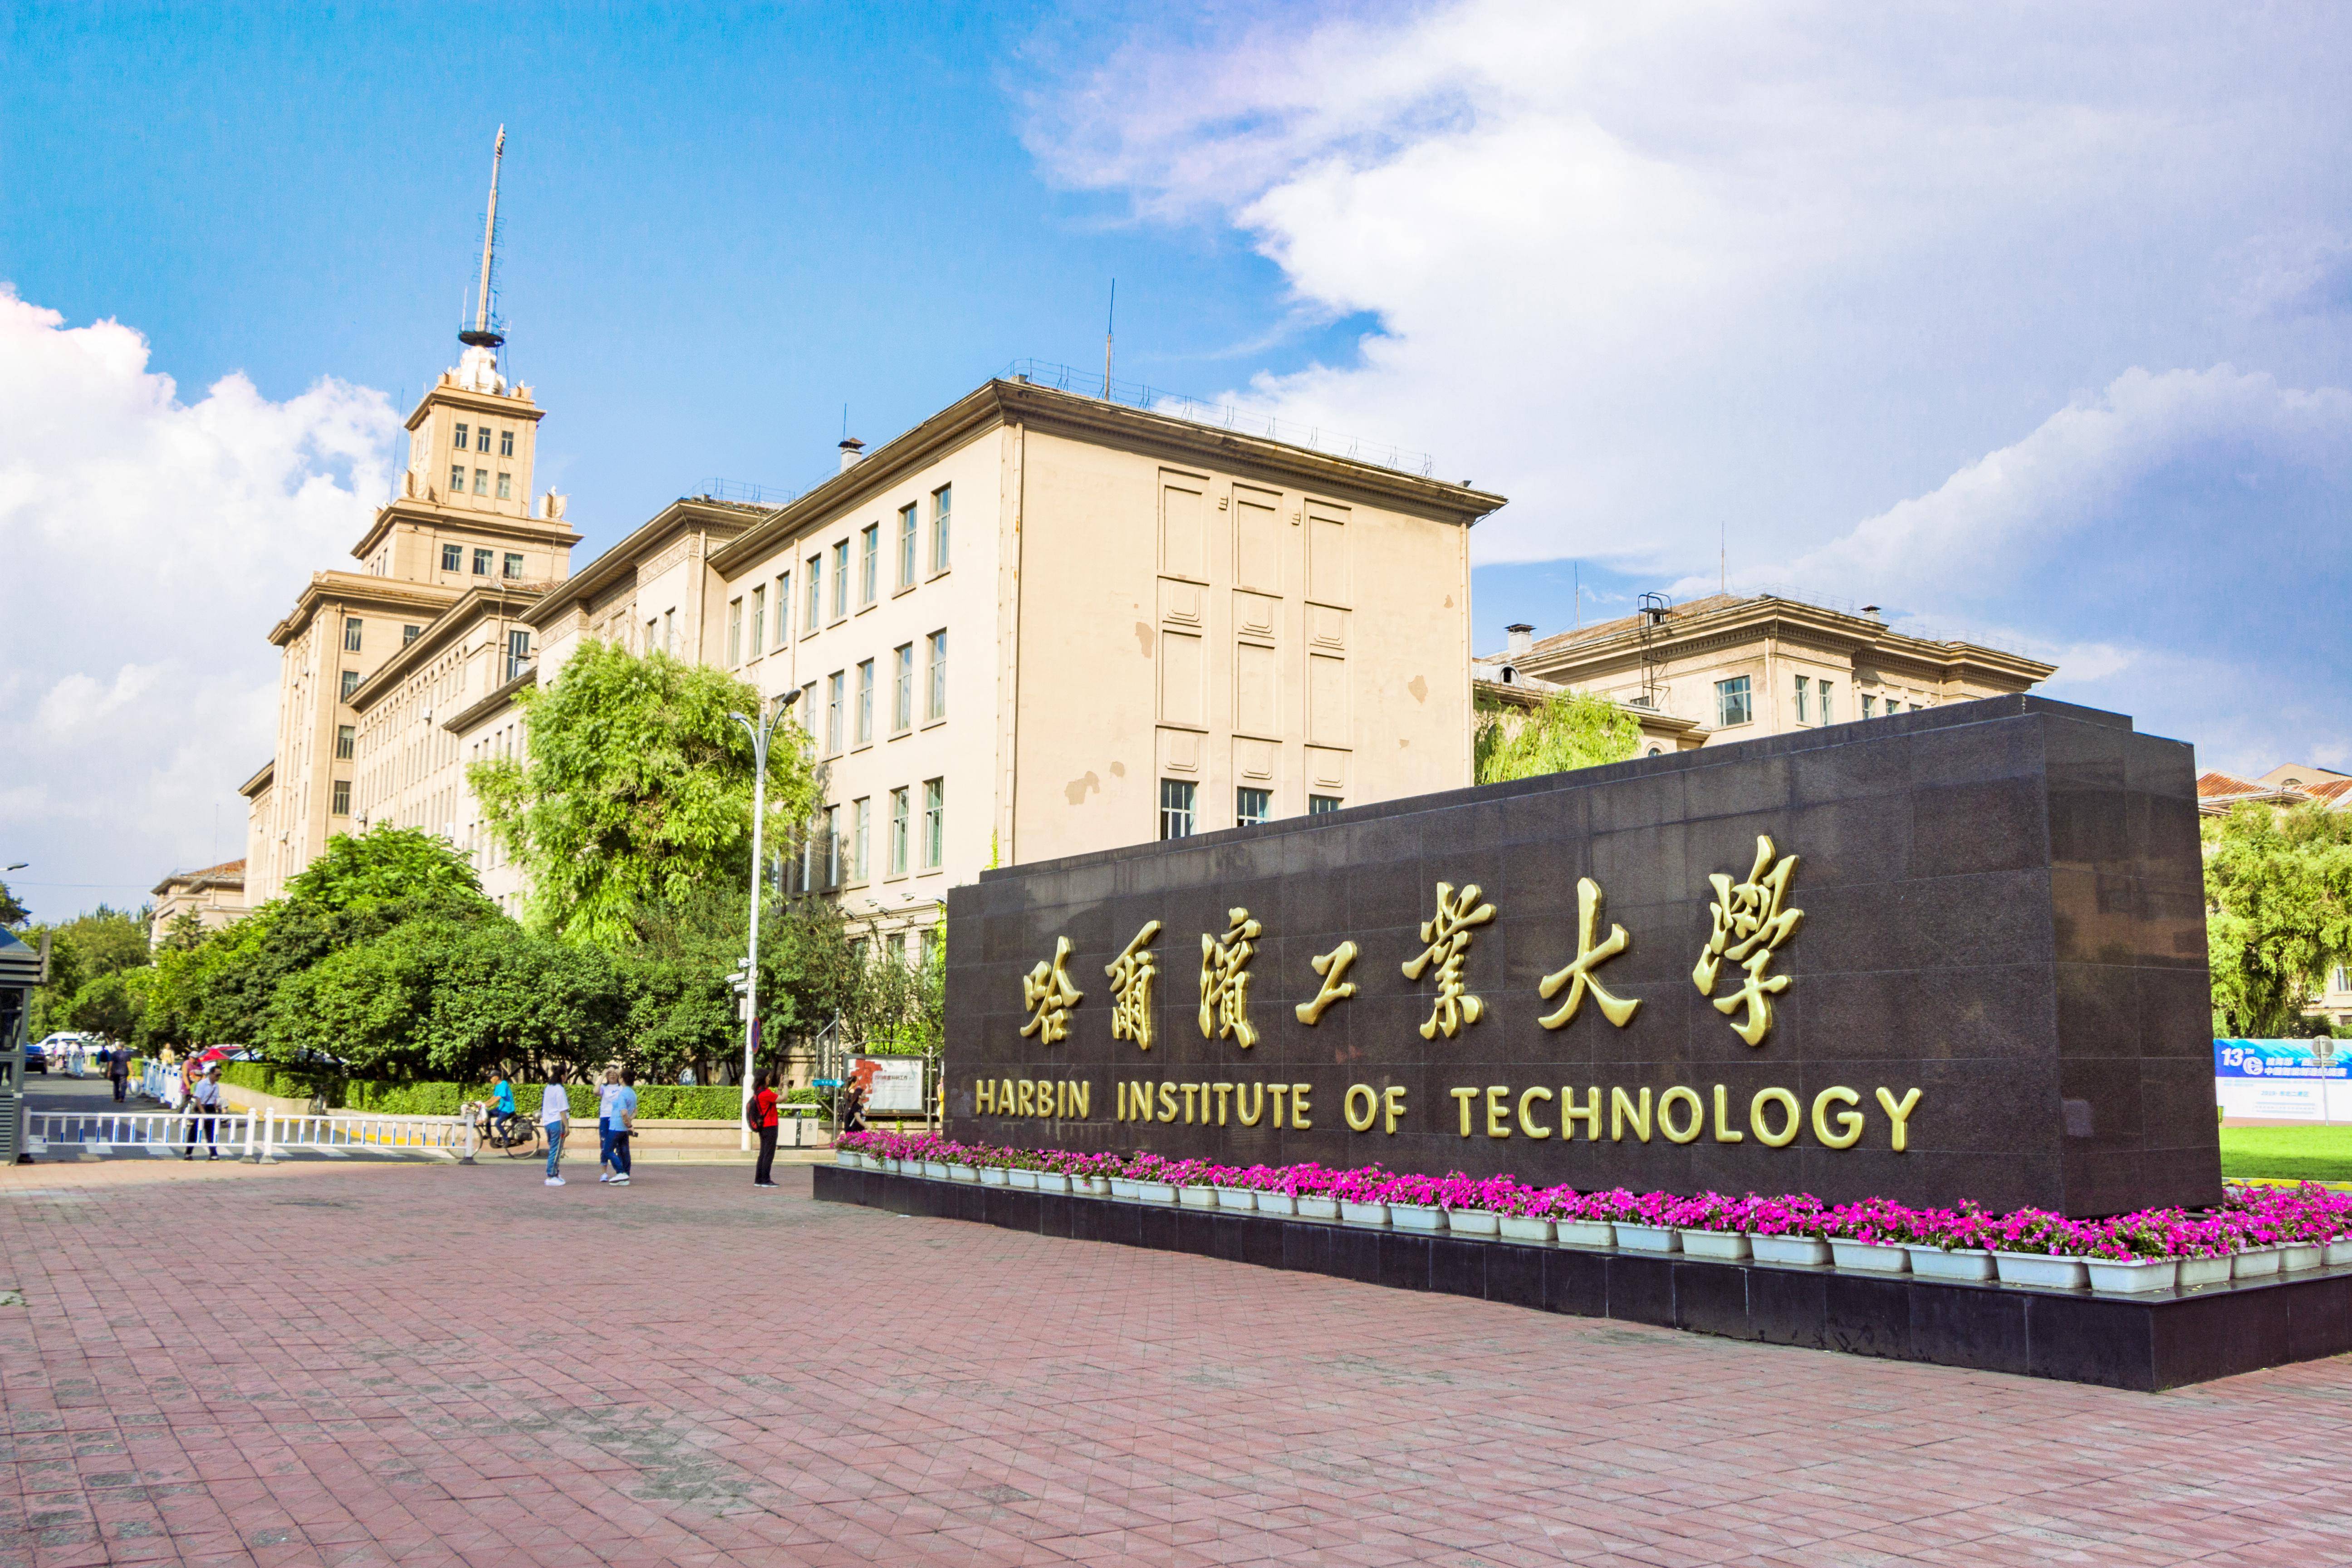 哈尔滨工业大学,简称哈工大,创建于1920年,隶属中华人民共和国工业和